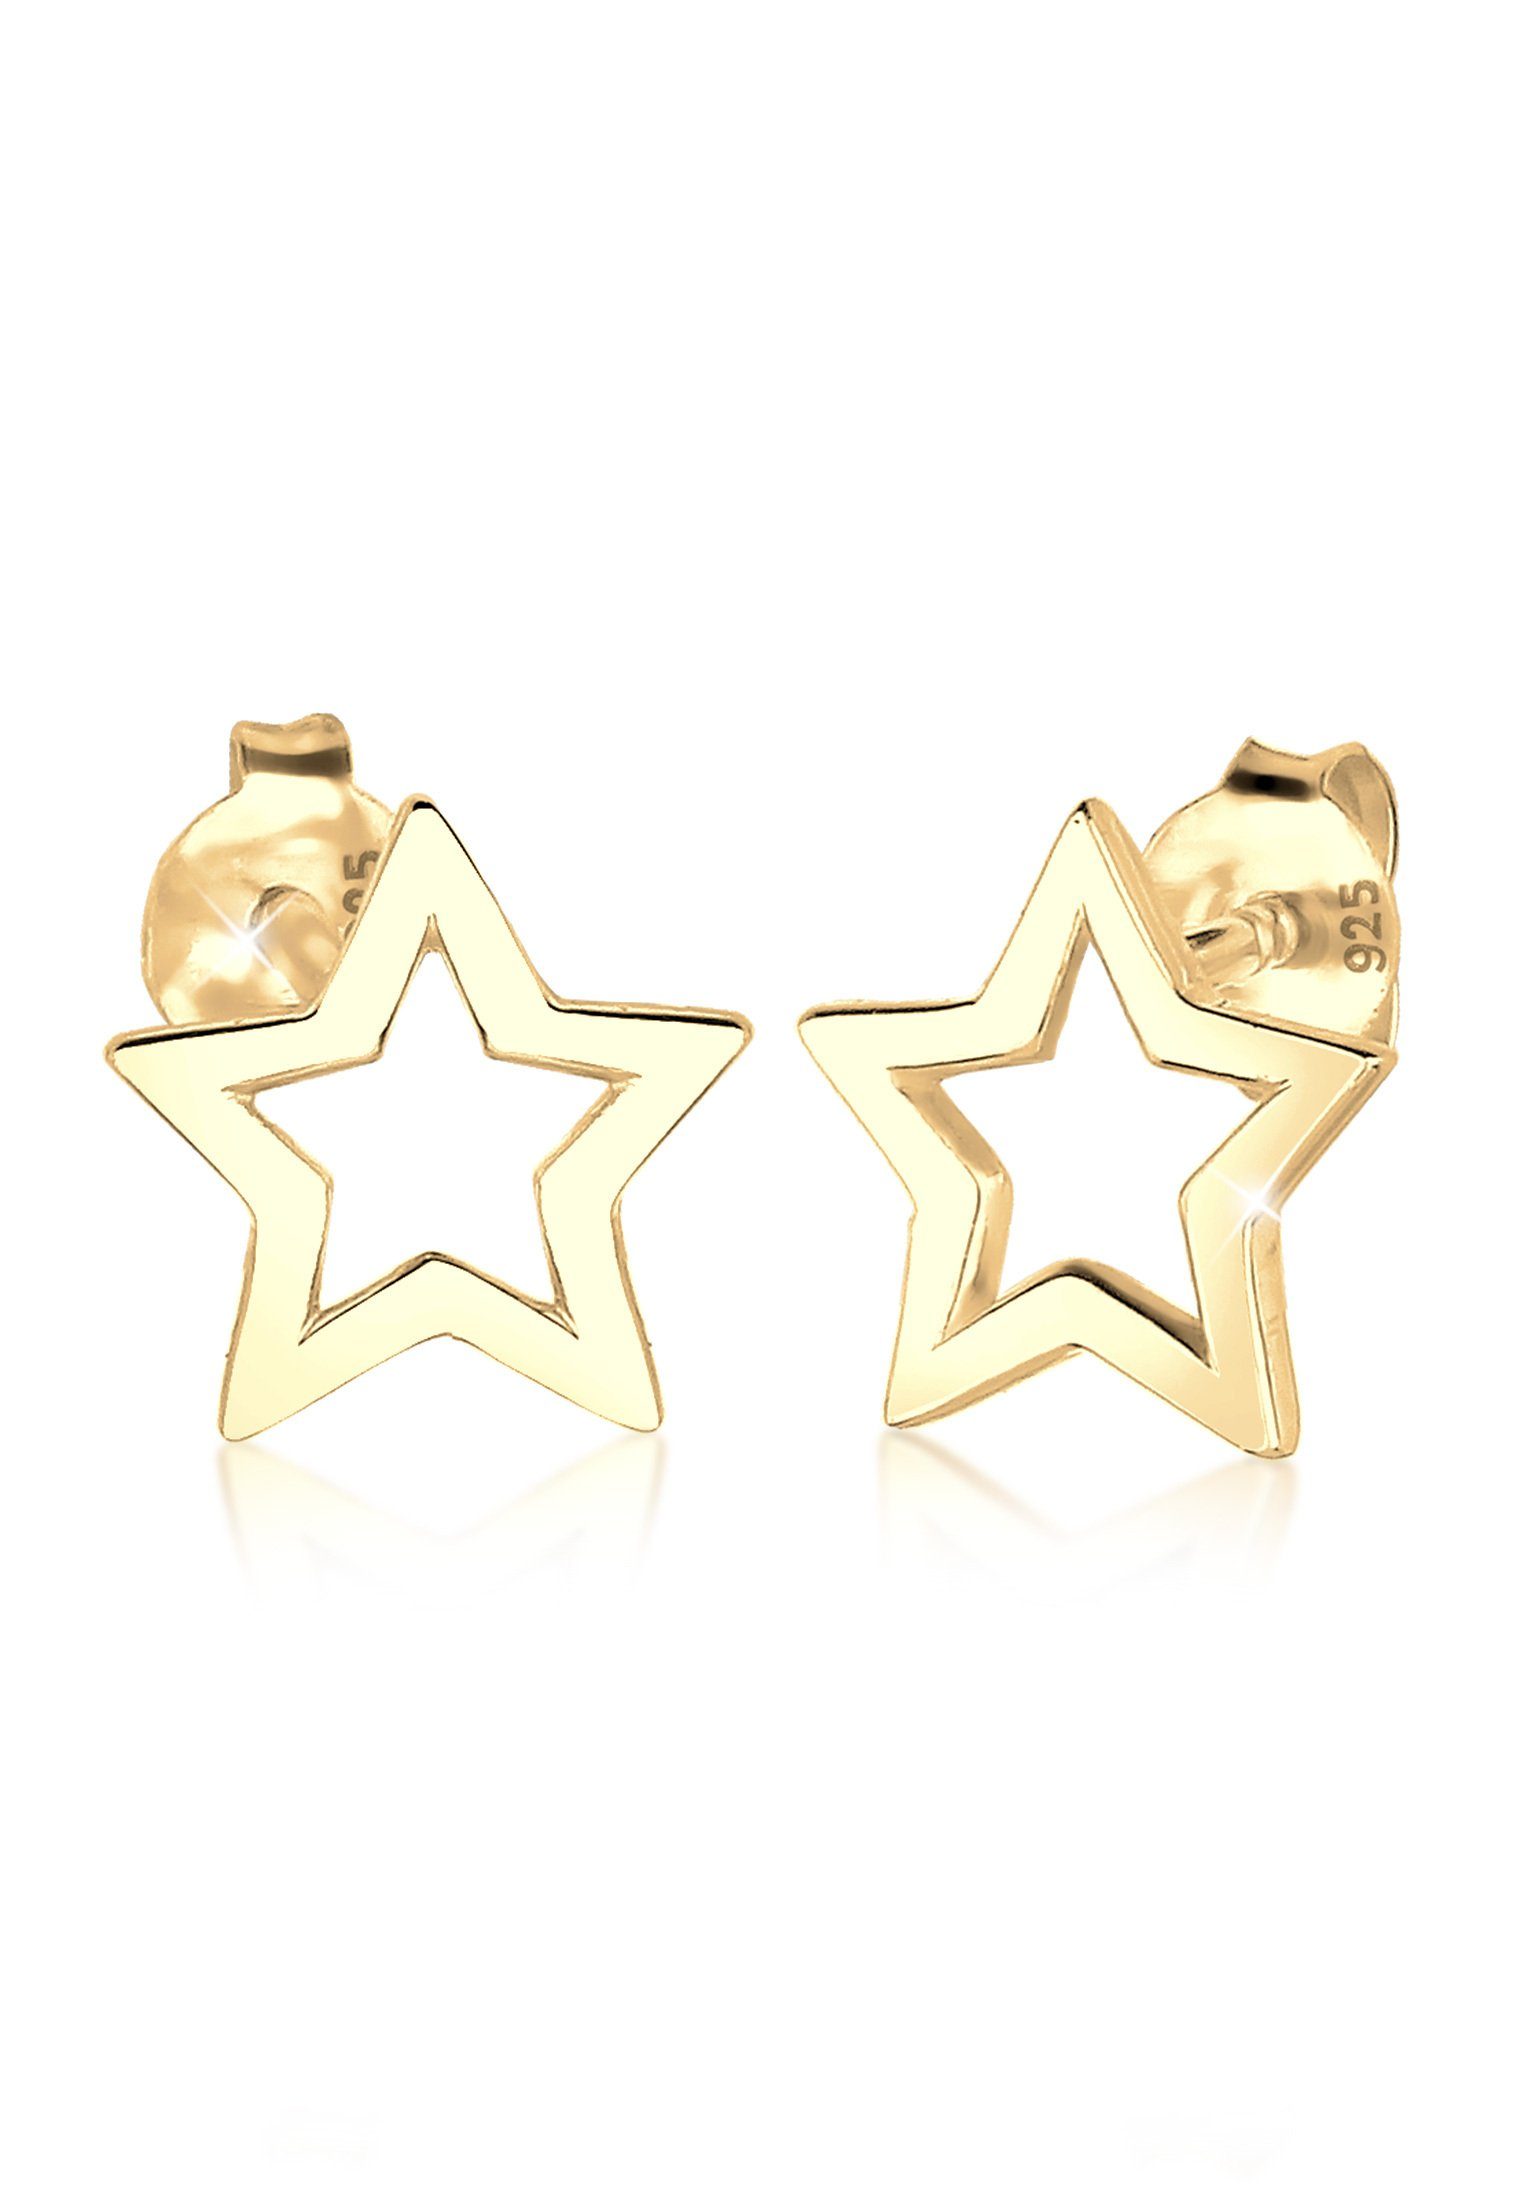 Rosé-Silber Gold Kupfer SHEGRACE Stern-Ohrringe für Frauen mit Stern-Anhänger Ohrringe 21,7 mm Muttertagsgeschenk für Frau, Freundin, Mutter, Mädchen, Kinder